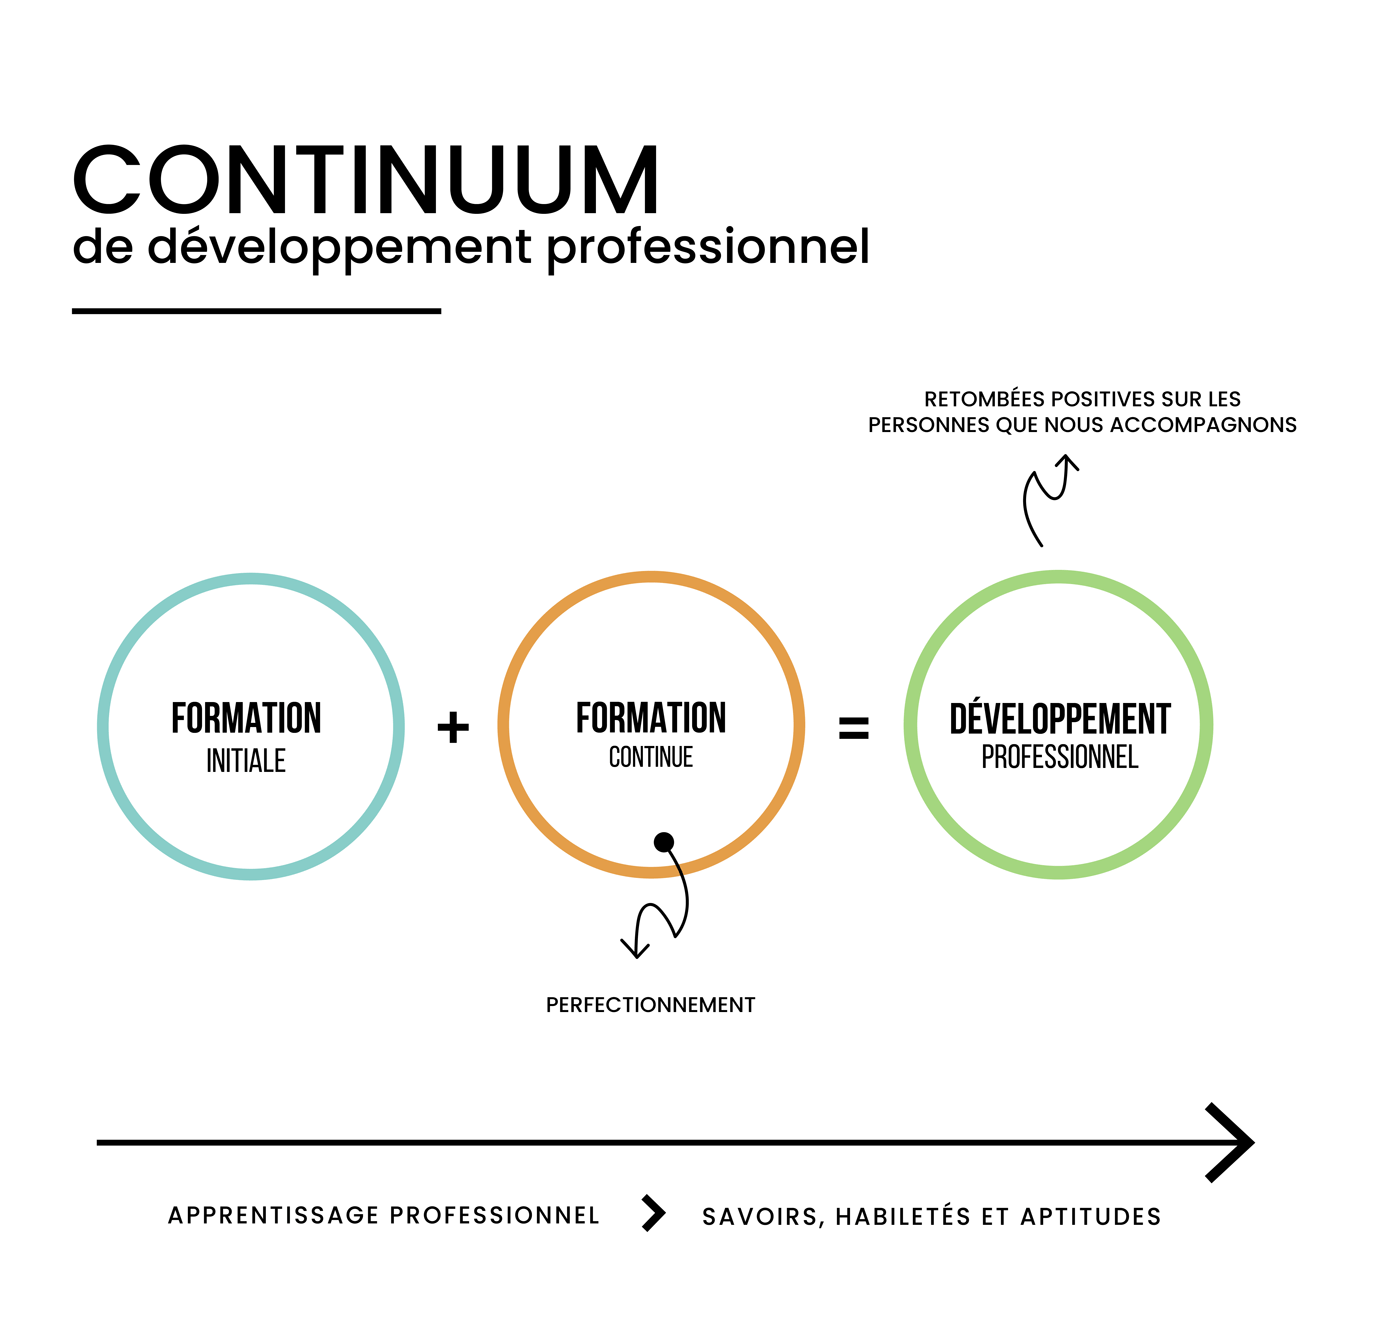 Continuum de développement professionnel. Formation initiale + formation continue = développement professionnel